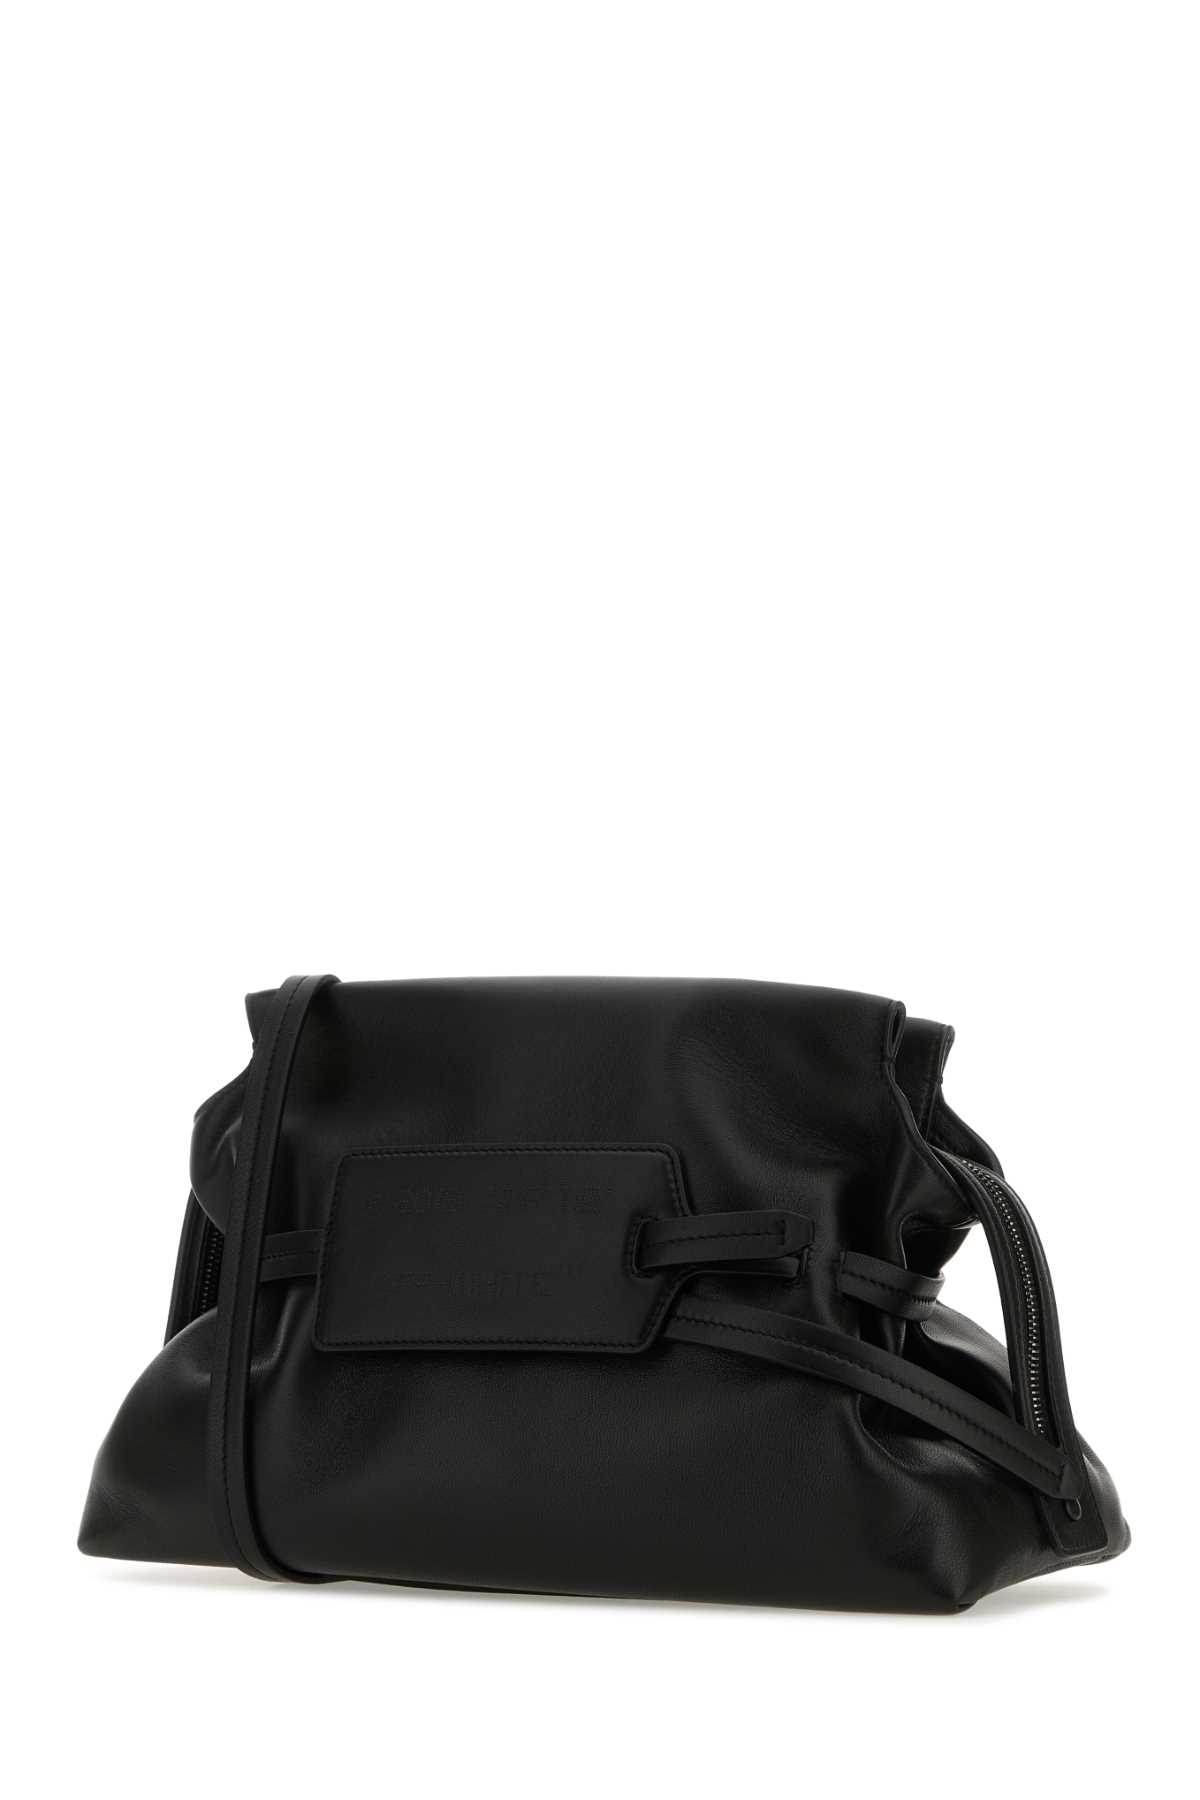 Shop Off-white Black Leather Zip Tie Shoulder Bag